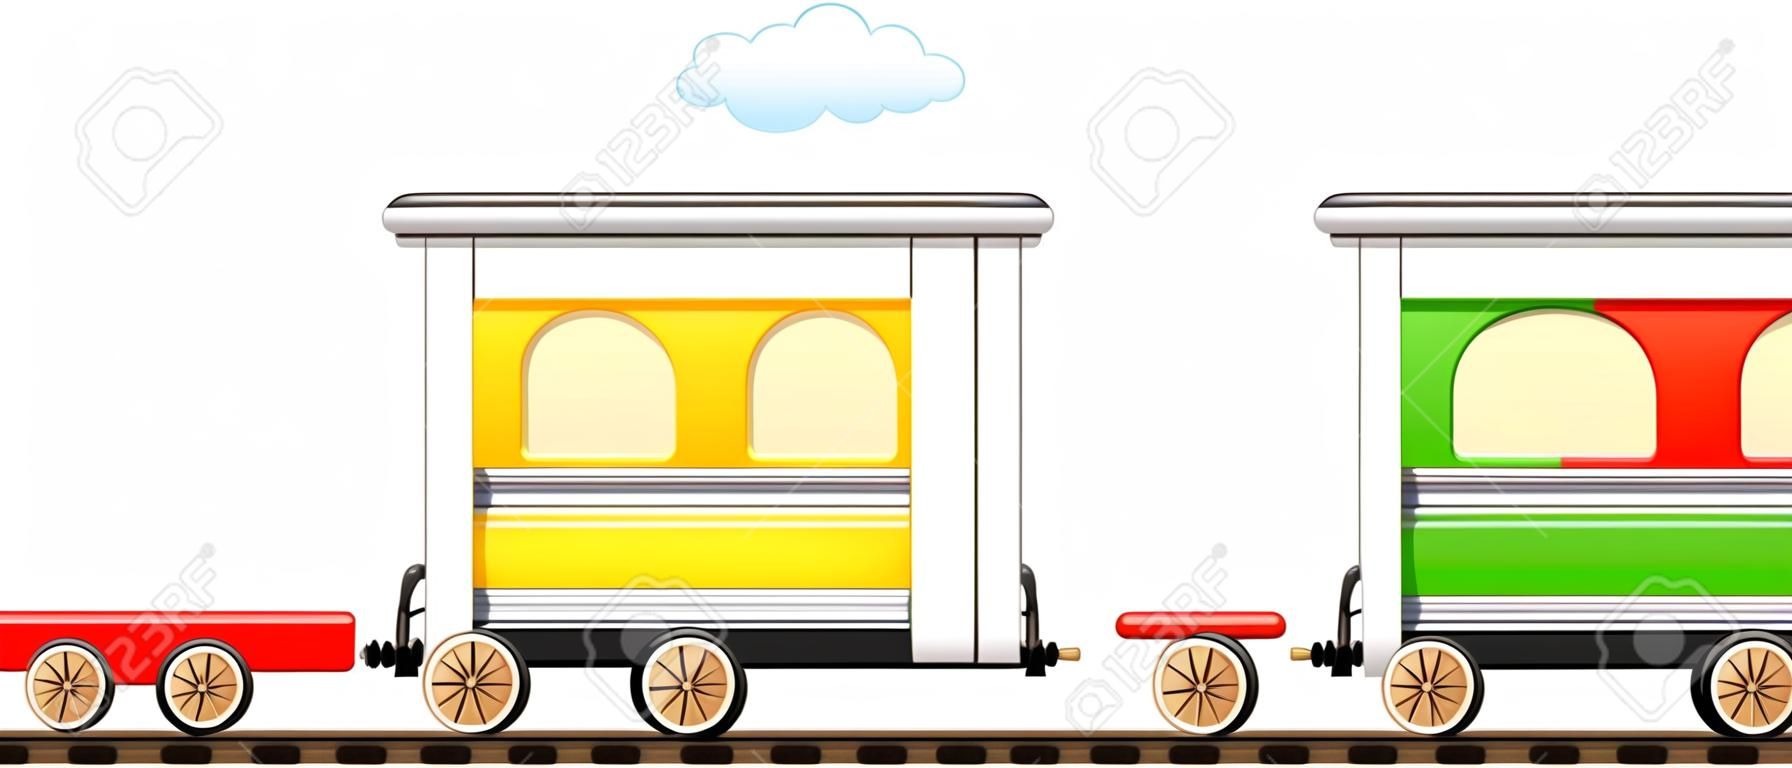 Cartoon isolierte niedlichen Zug mit bunten Wagen in Eisenbahn